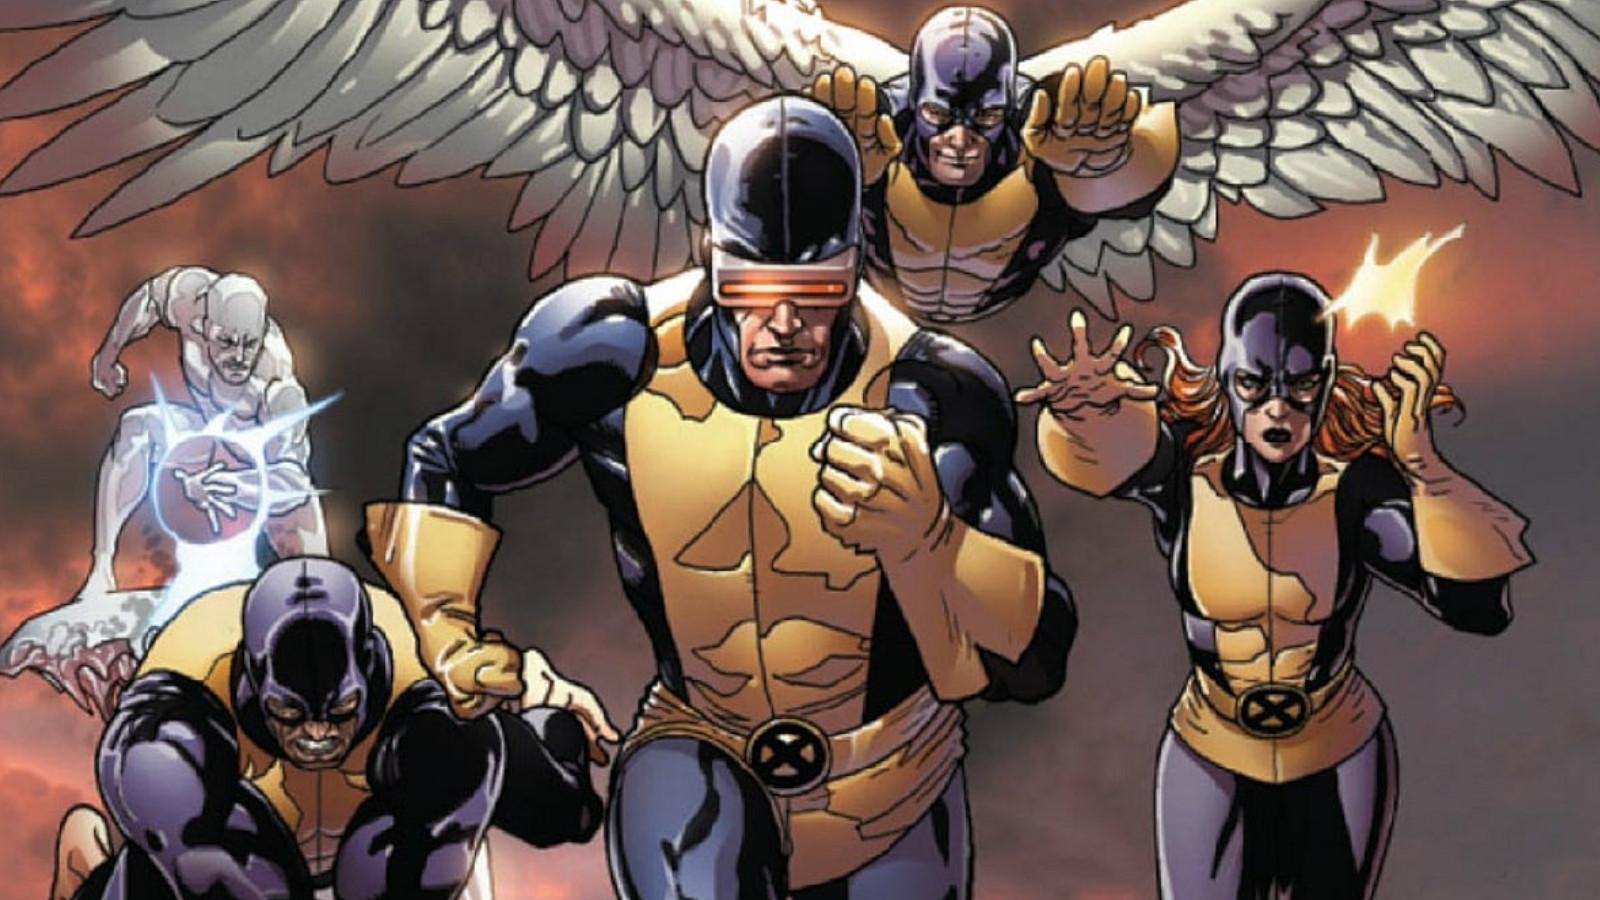 Original X-Men team